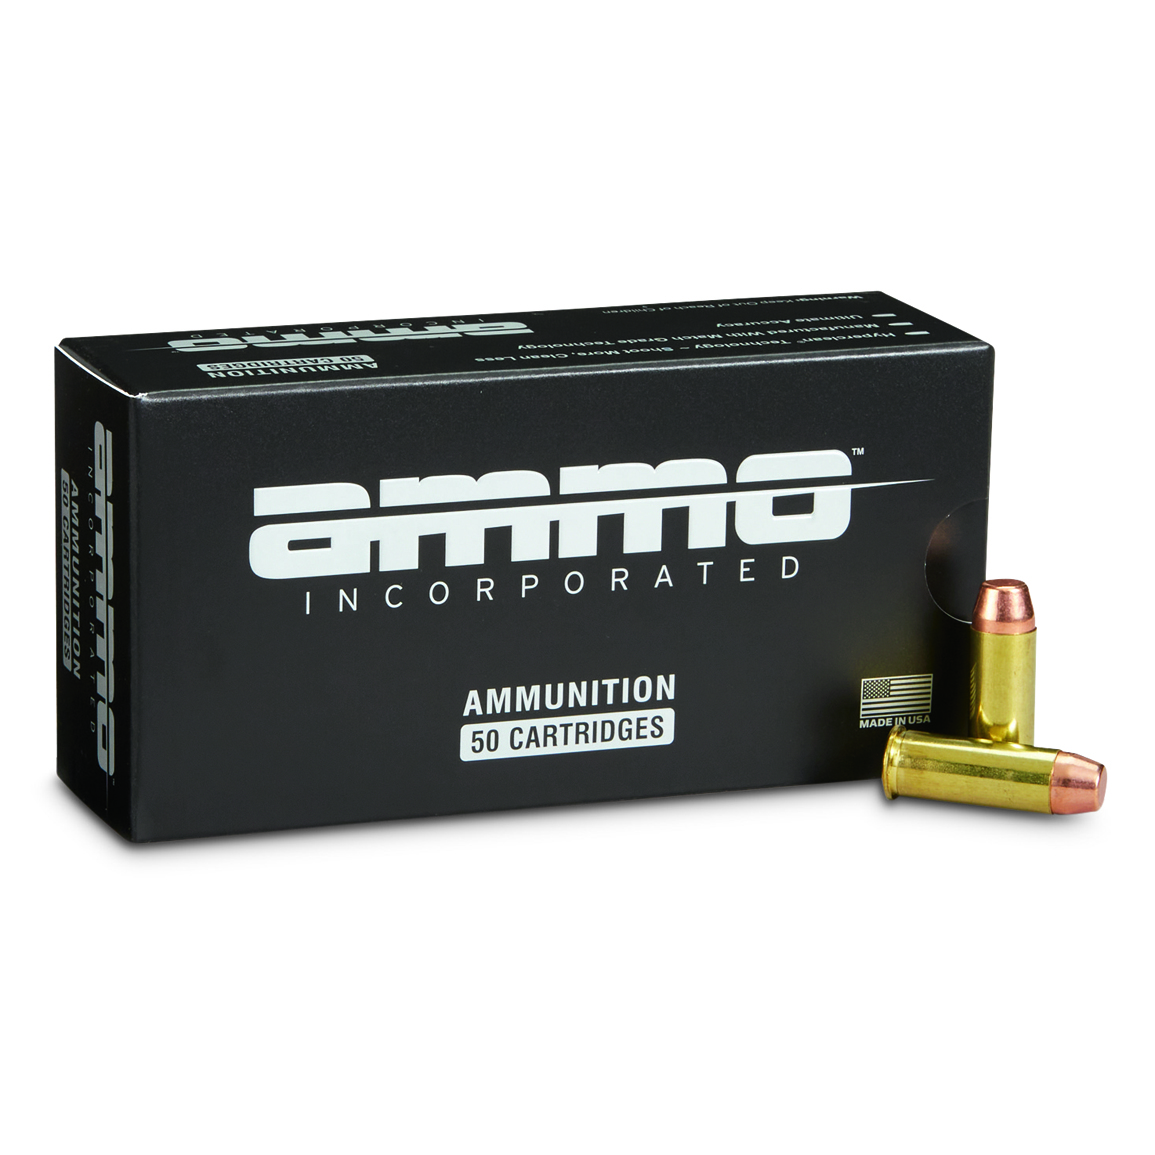 Ammo Inc. Signature, .44 Special, TMC, 220 Grain, 50 Rounds